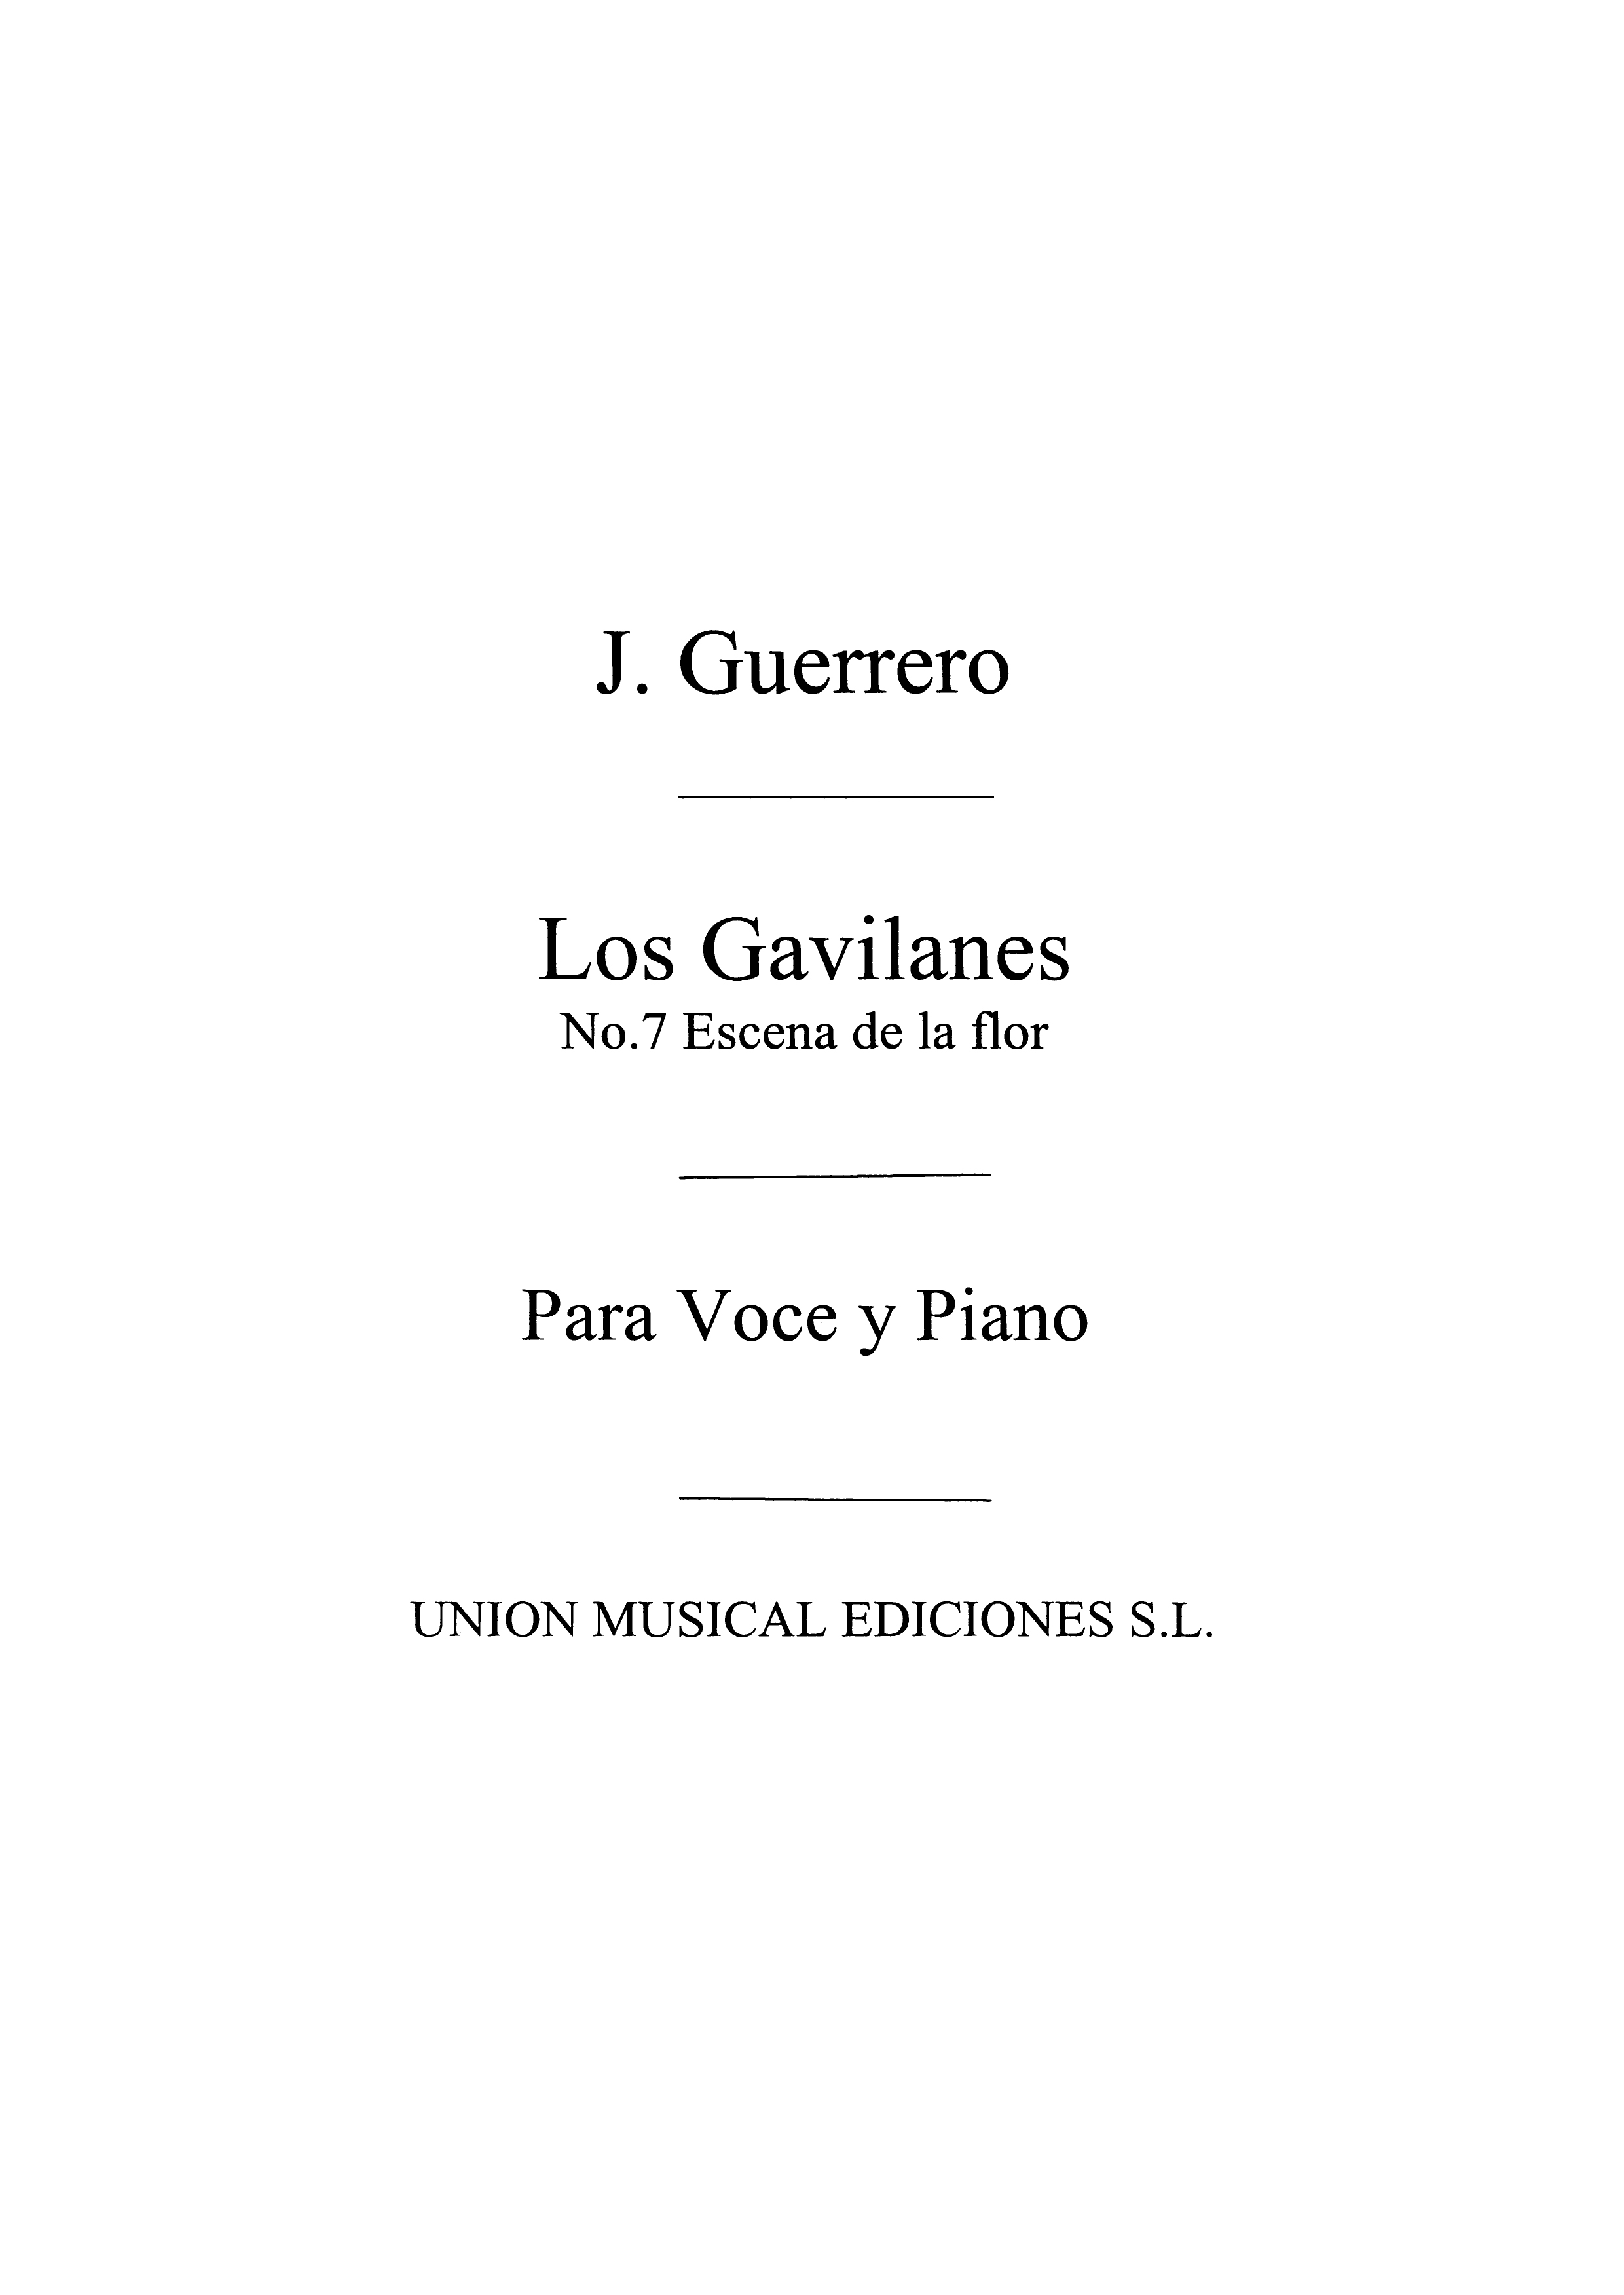 Jacinto Guerrero: Escena No.7 De Los Gavilanes